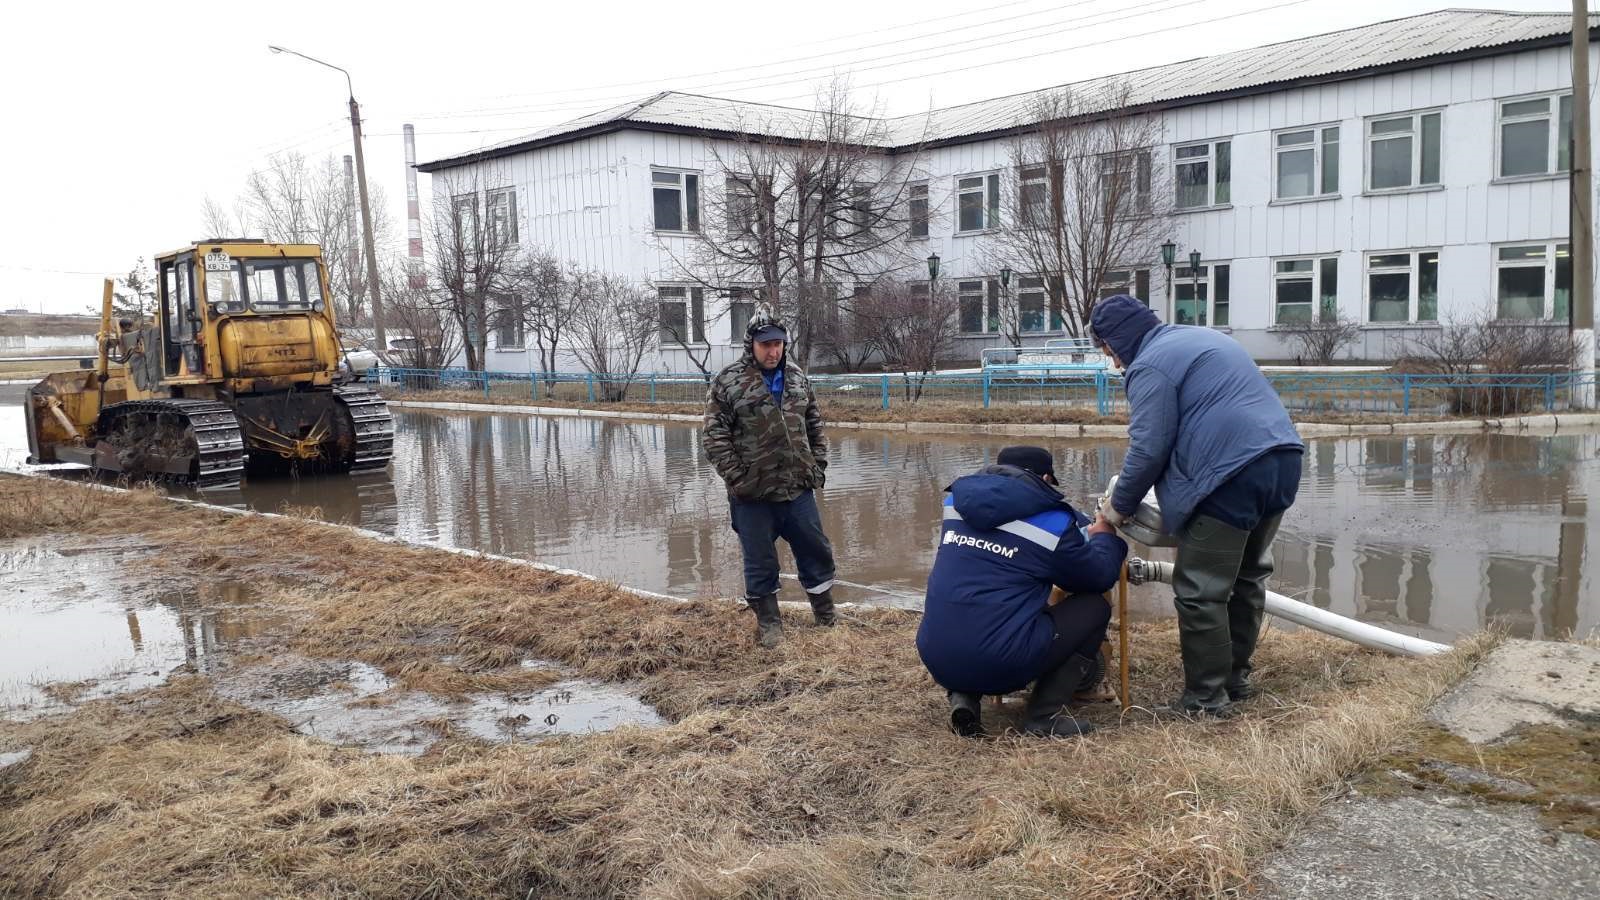 Сотрудники КрасКома продолжают вести круглосуточный мониторинг паводковой ситуации на малых реках в черте Красноярска